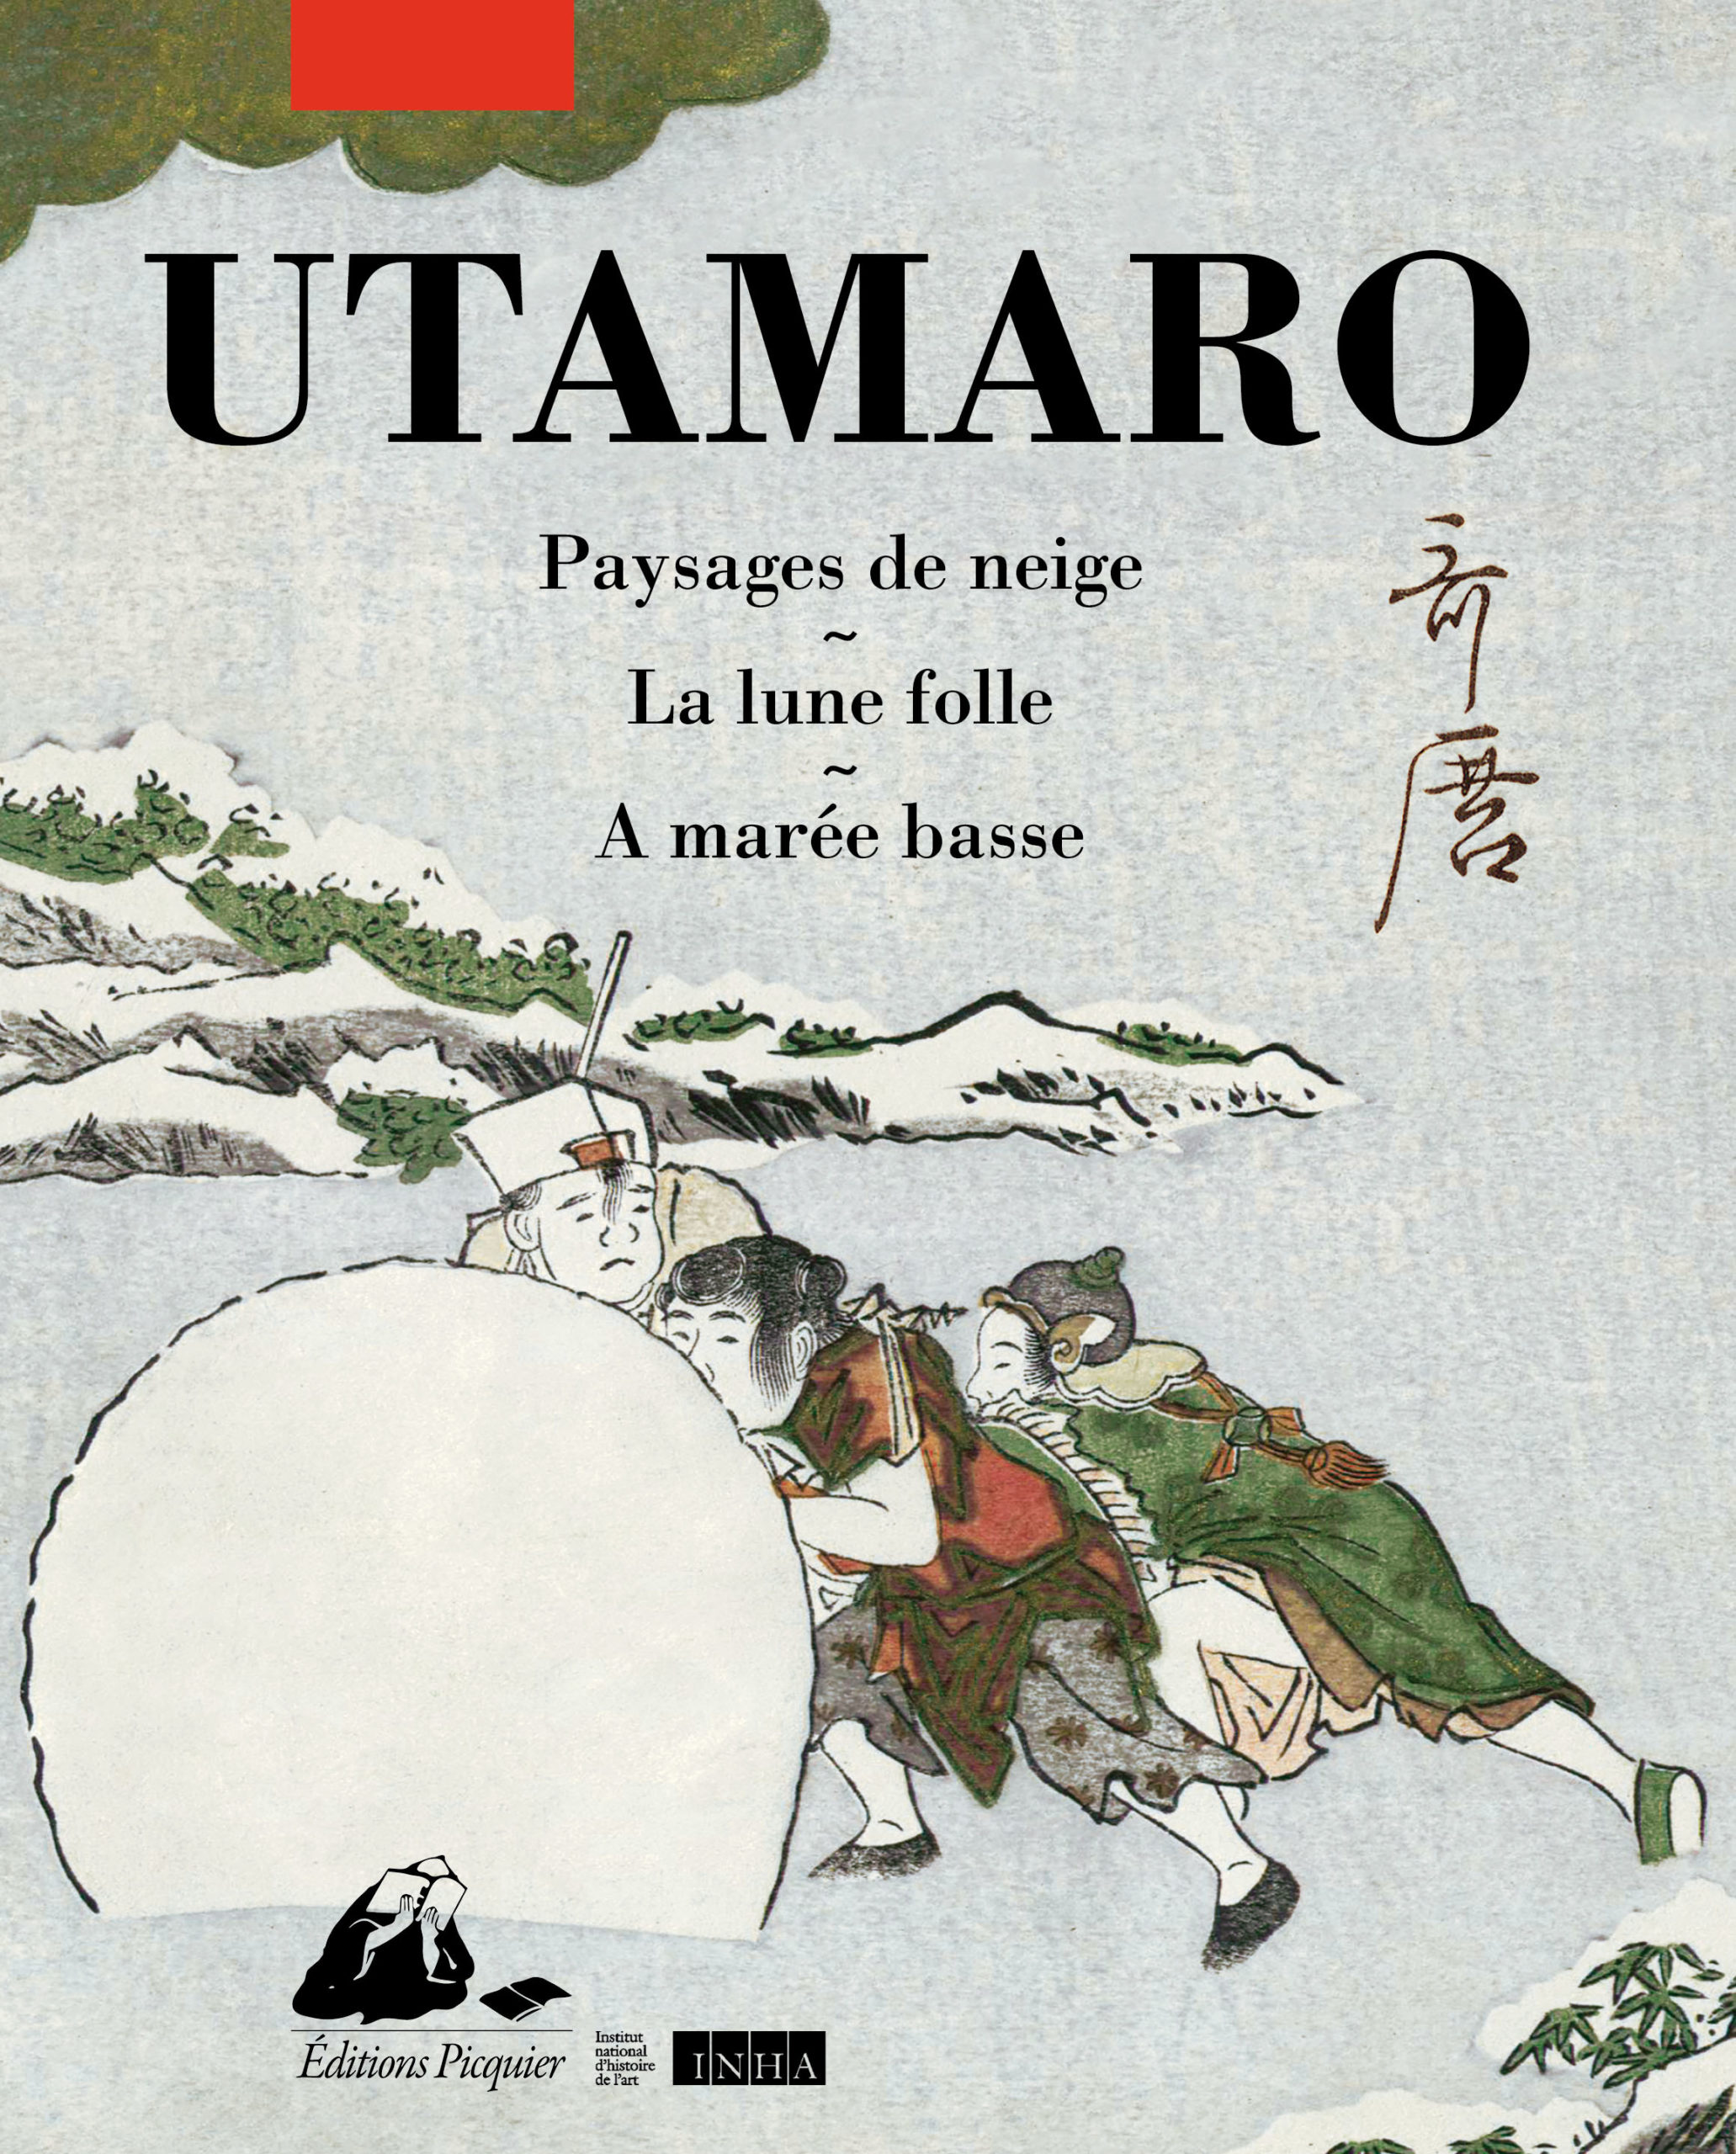 Trois albums d’estampes d’Utamaro sont réunis aux éditions Picquier.